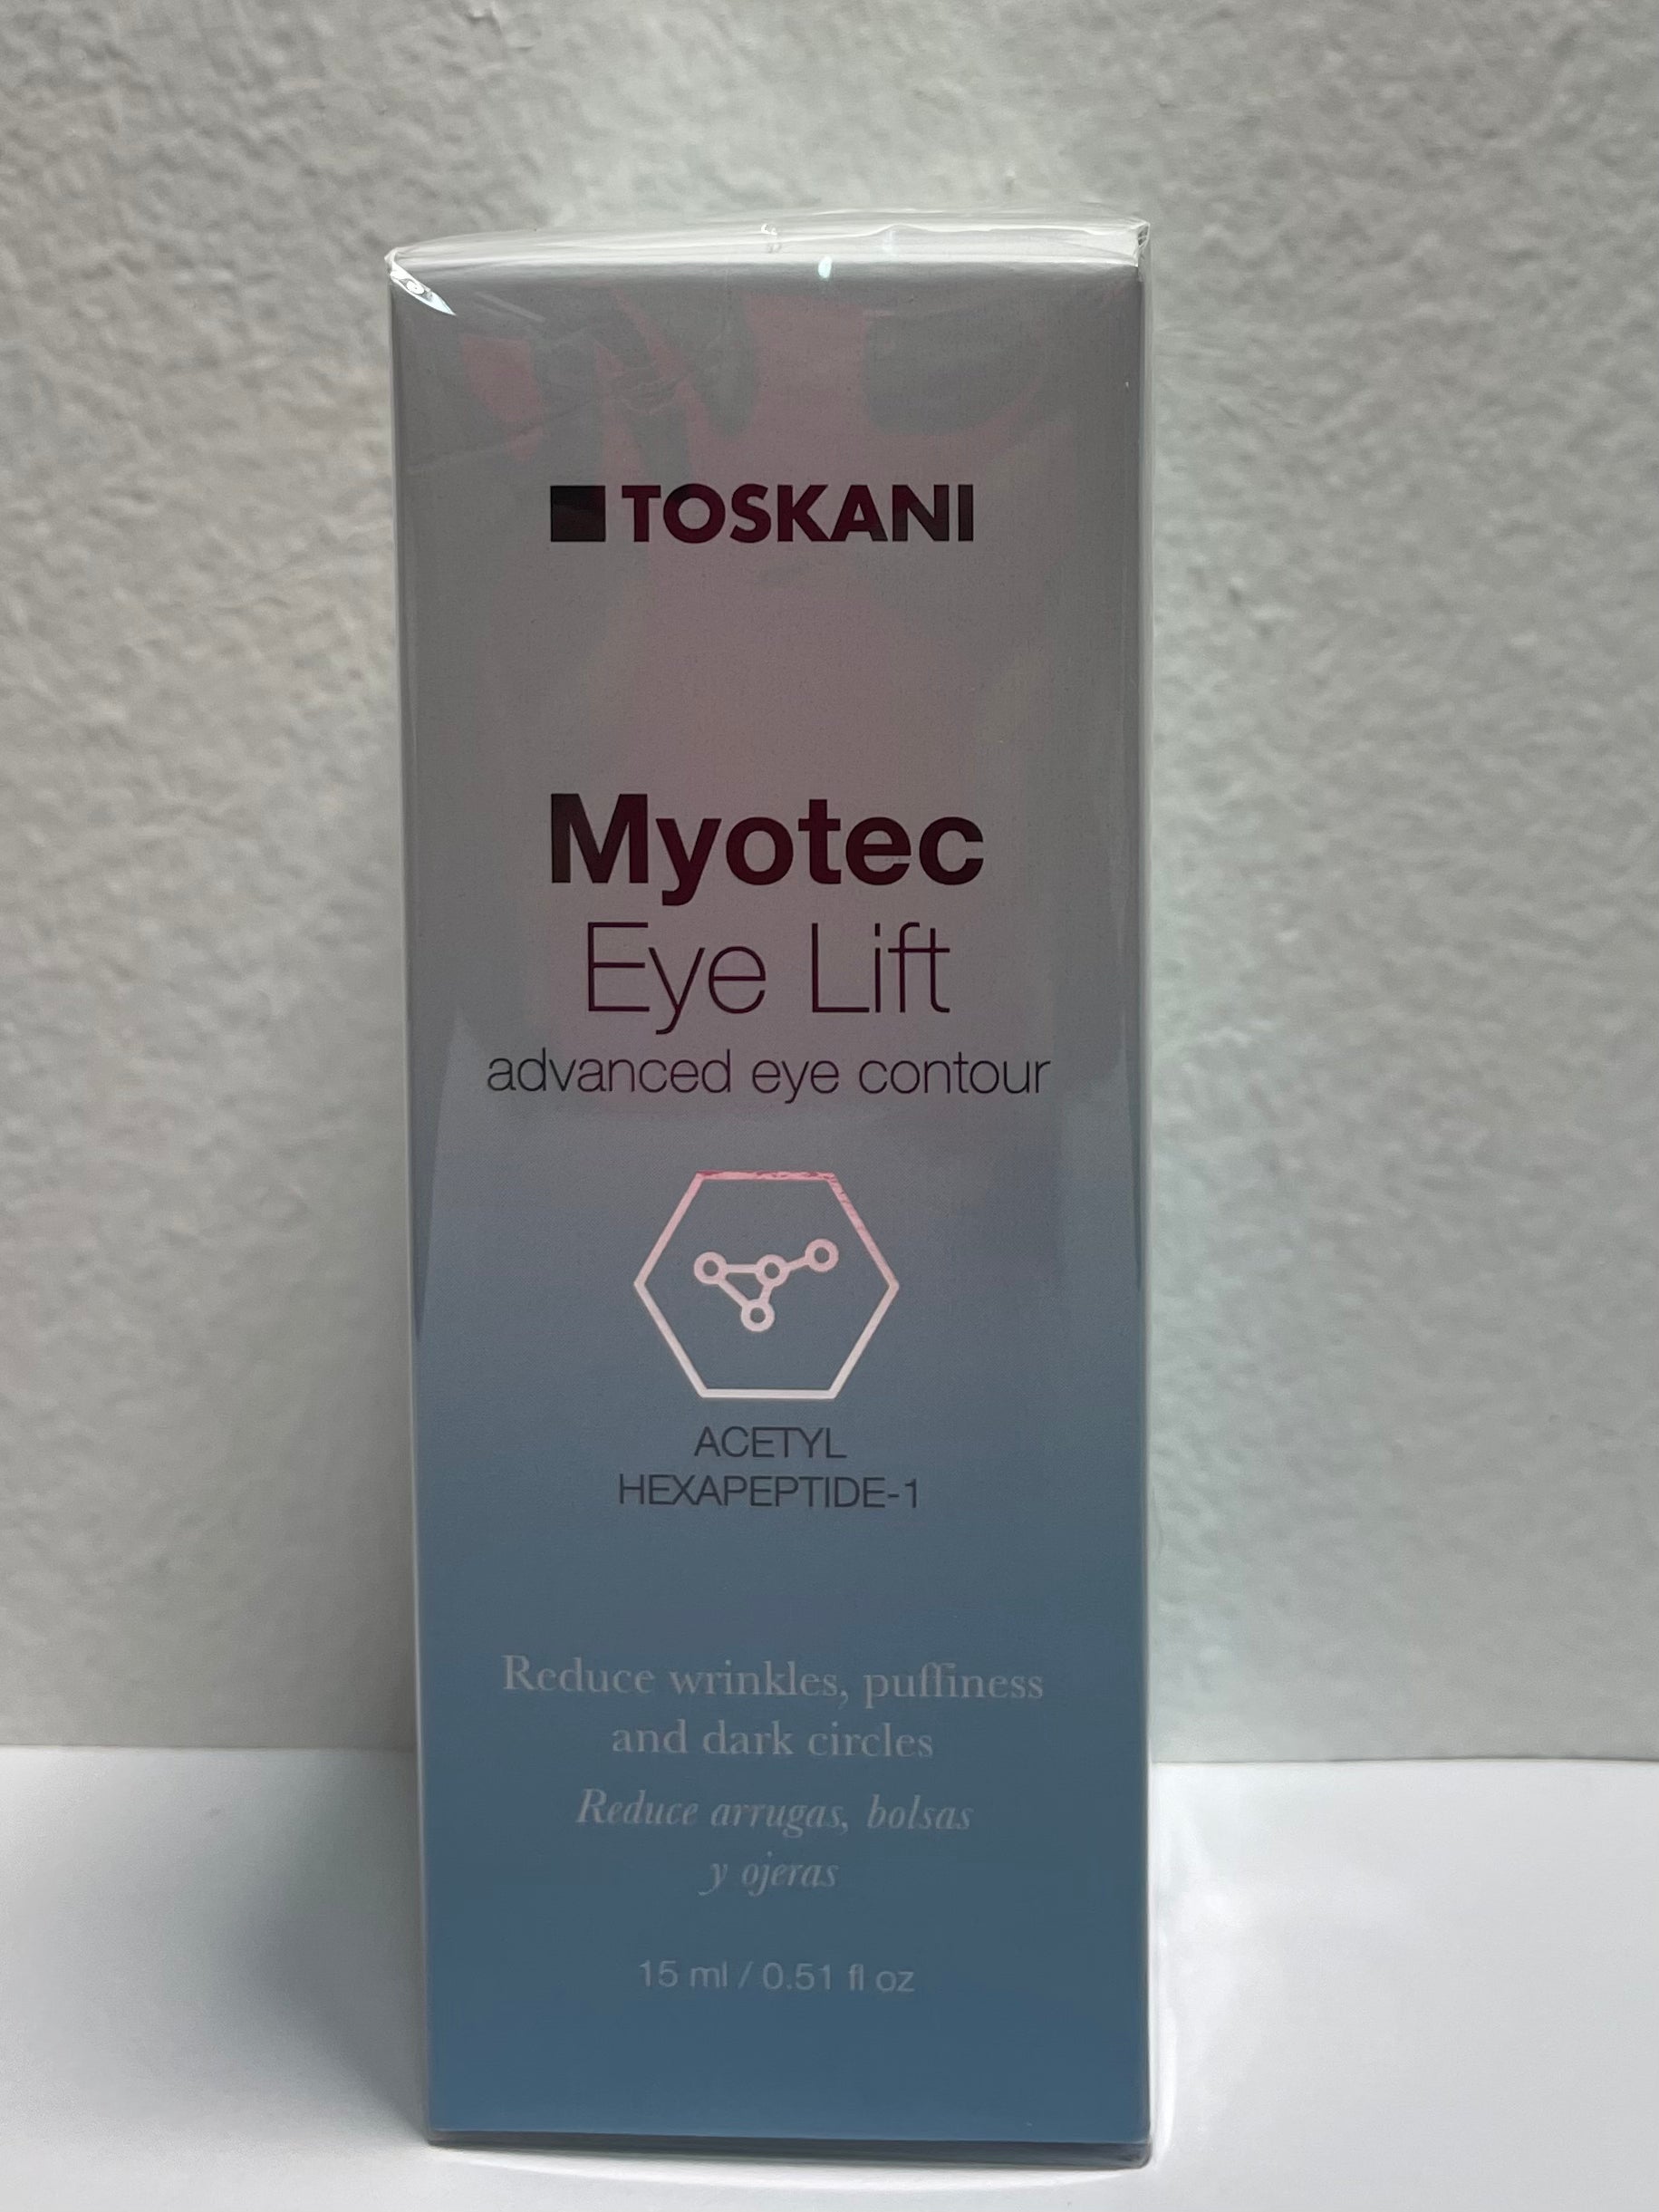 Myotec Eye Lift Toskani